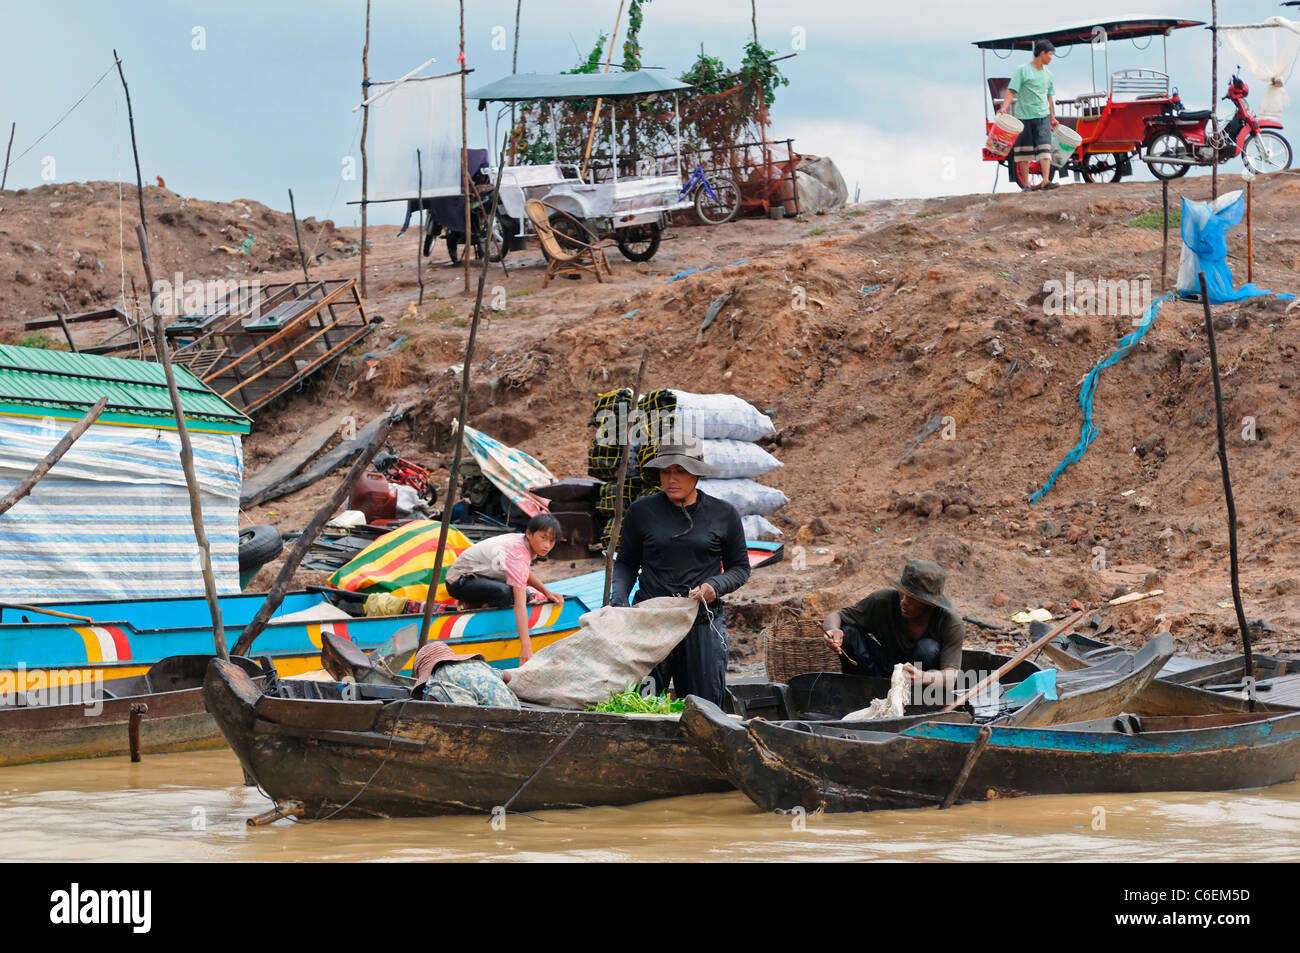 Il Tonle Sap lago d'acqua dolce siem reap cambogia famiglia persone carico carico di sacchi di trasporto barca trasporto Foto Stock